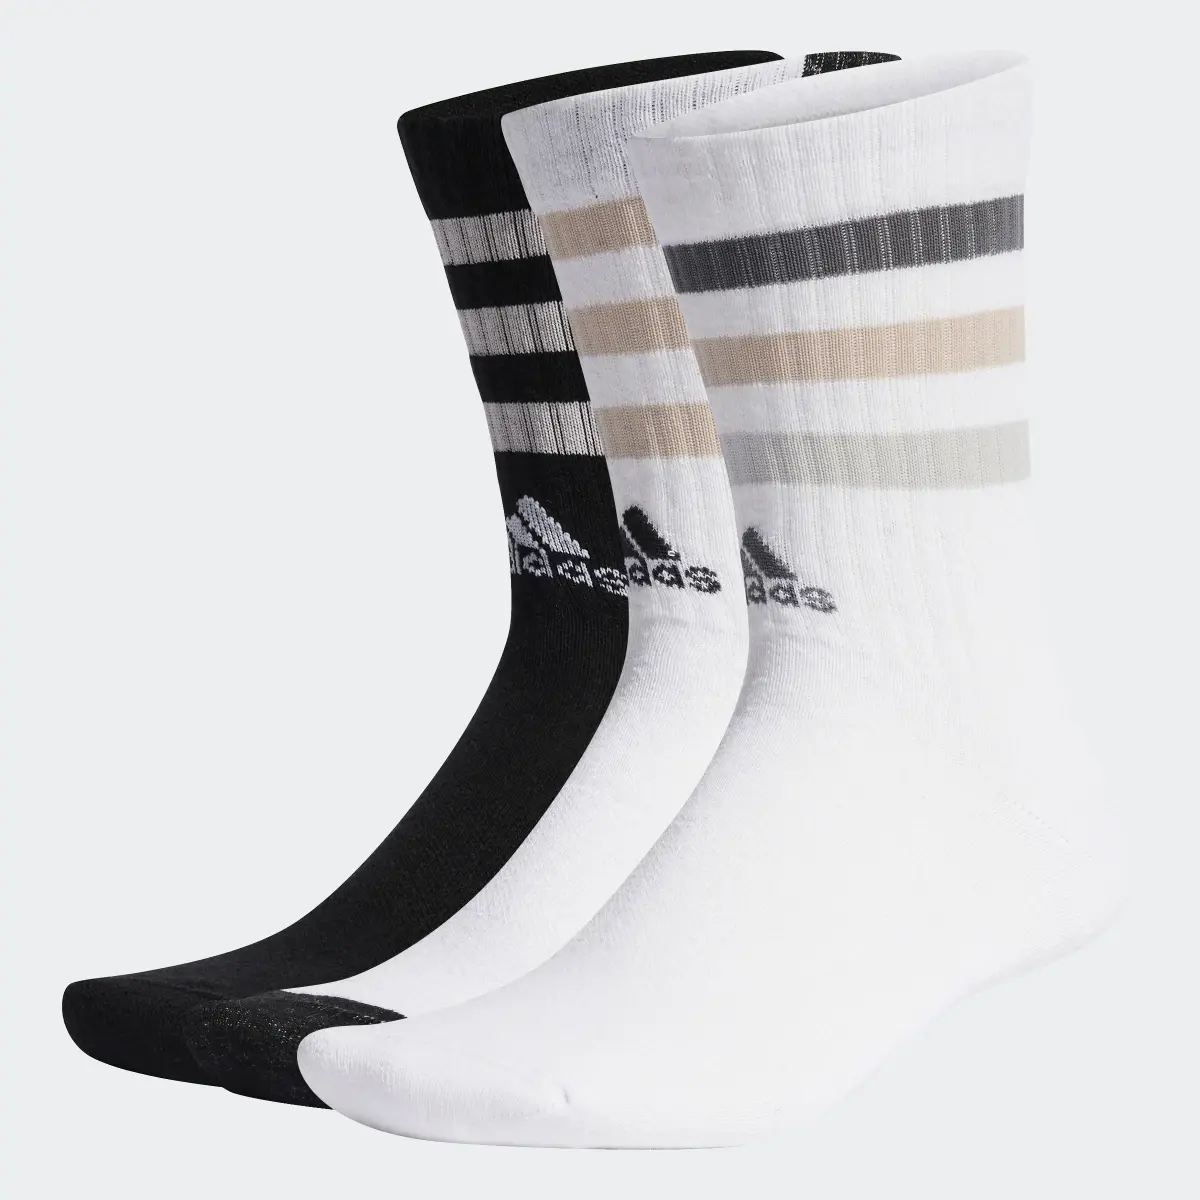 Adidas Meias de Cano Médio Acolchoadas 3-Stripes – 3 pares. 2